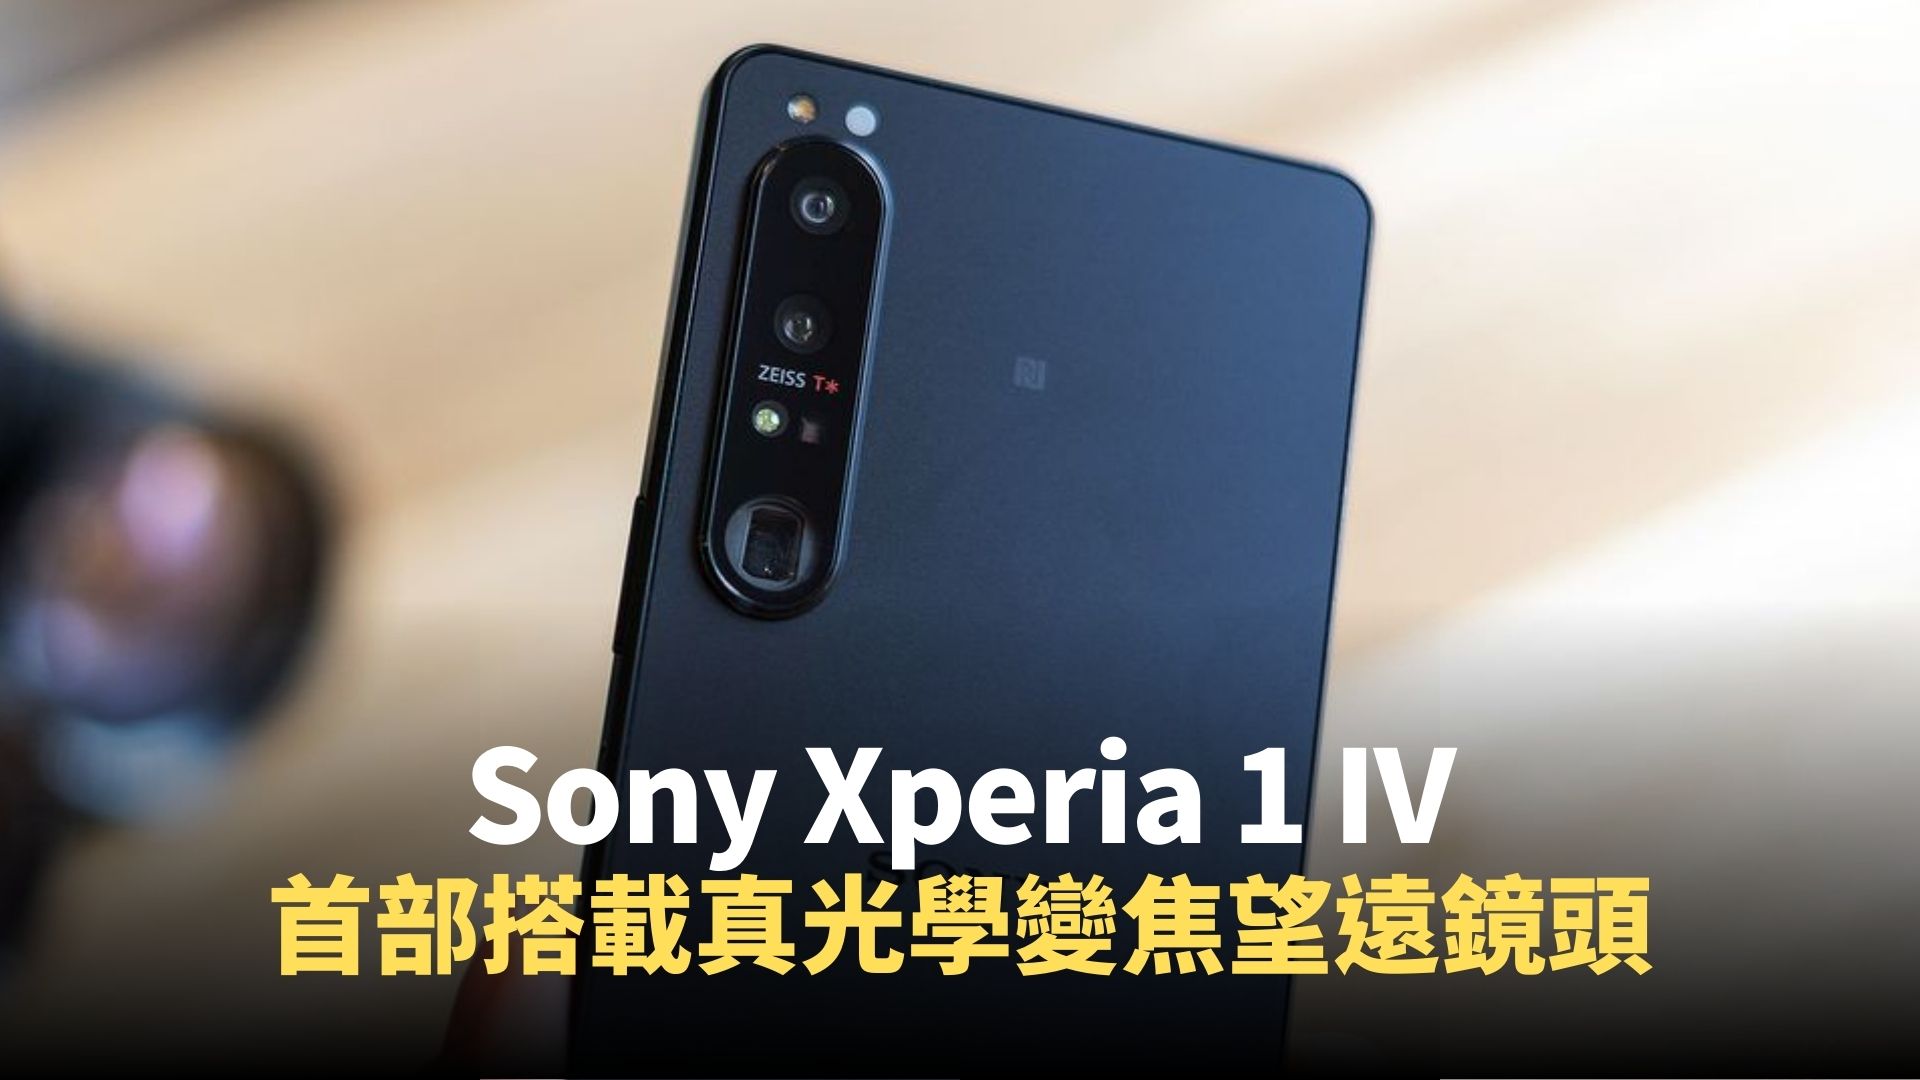 XPERIA 1 J9110 128Gb 香港版 シムフリー - スマートフォン/携帯電話